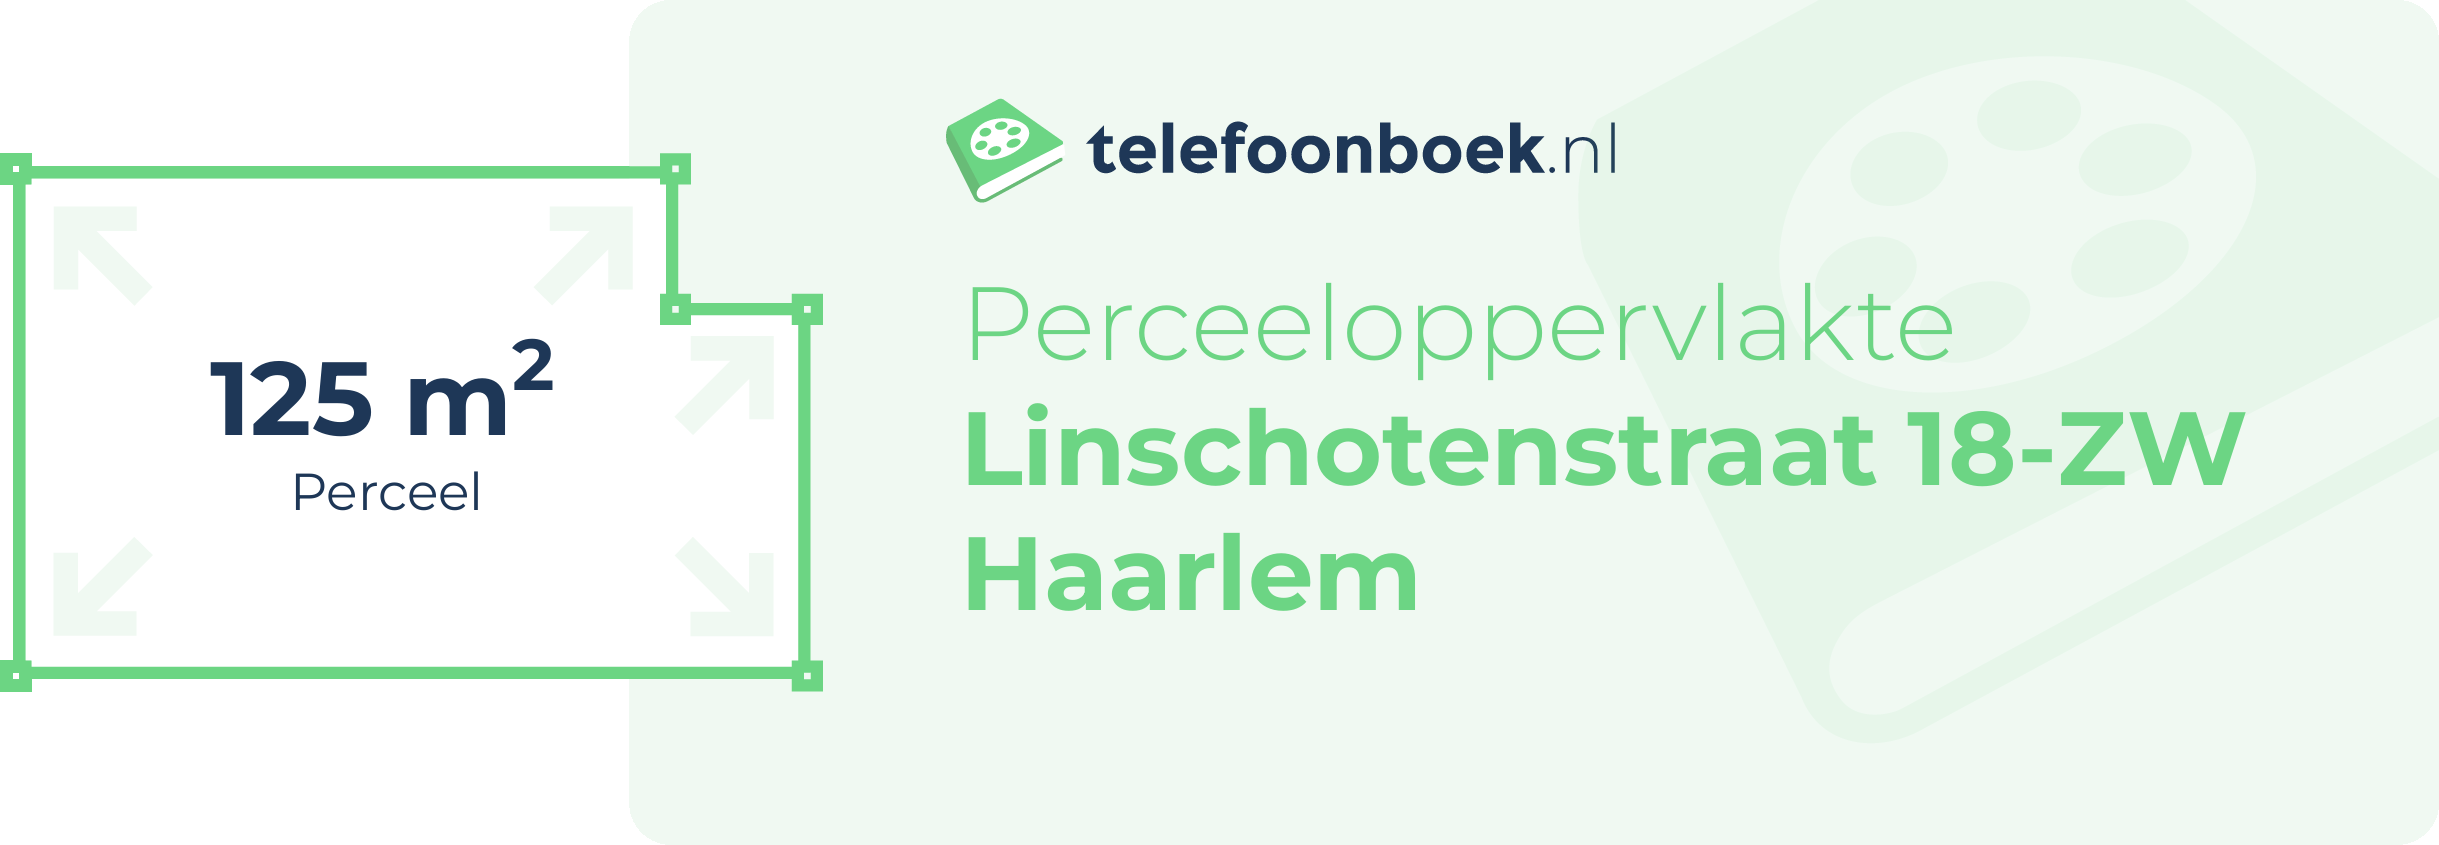 Perceeloppervlakte Linschotenstraat 18-ZW Haarlem